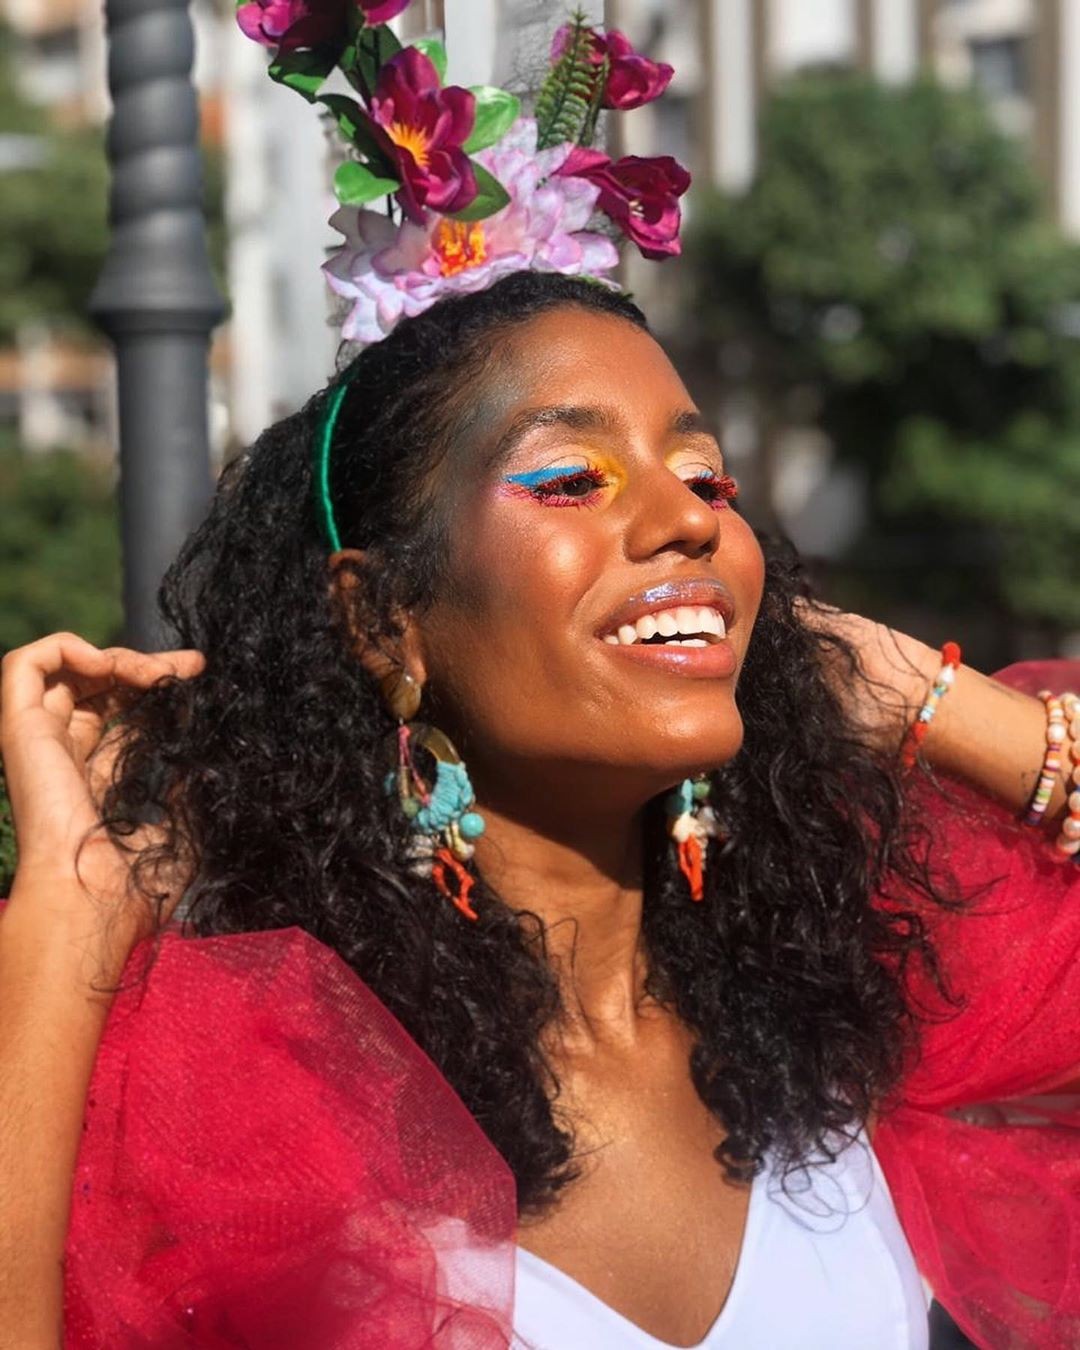 Alalaflor : flores como inspiração para o Carnaval (Foto: Reprodução Instagram)